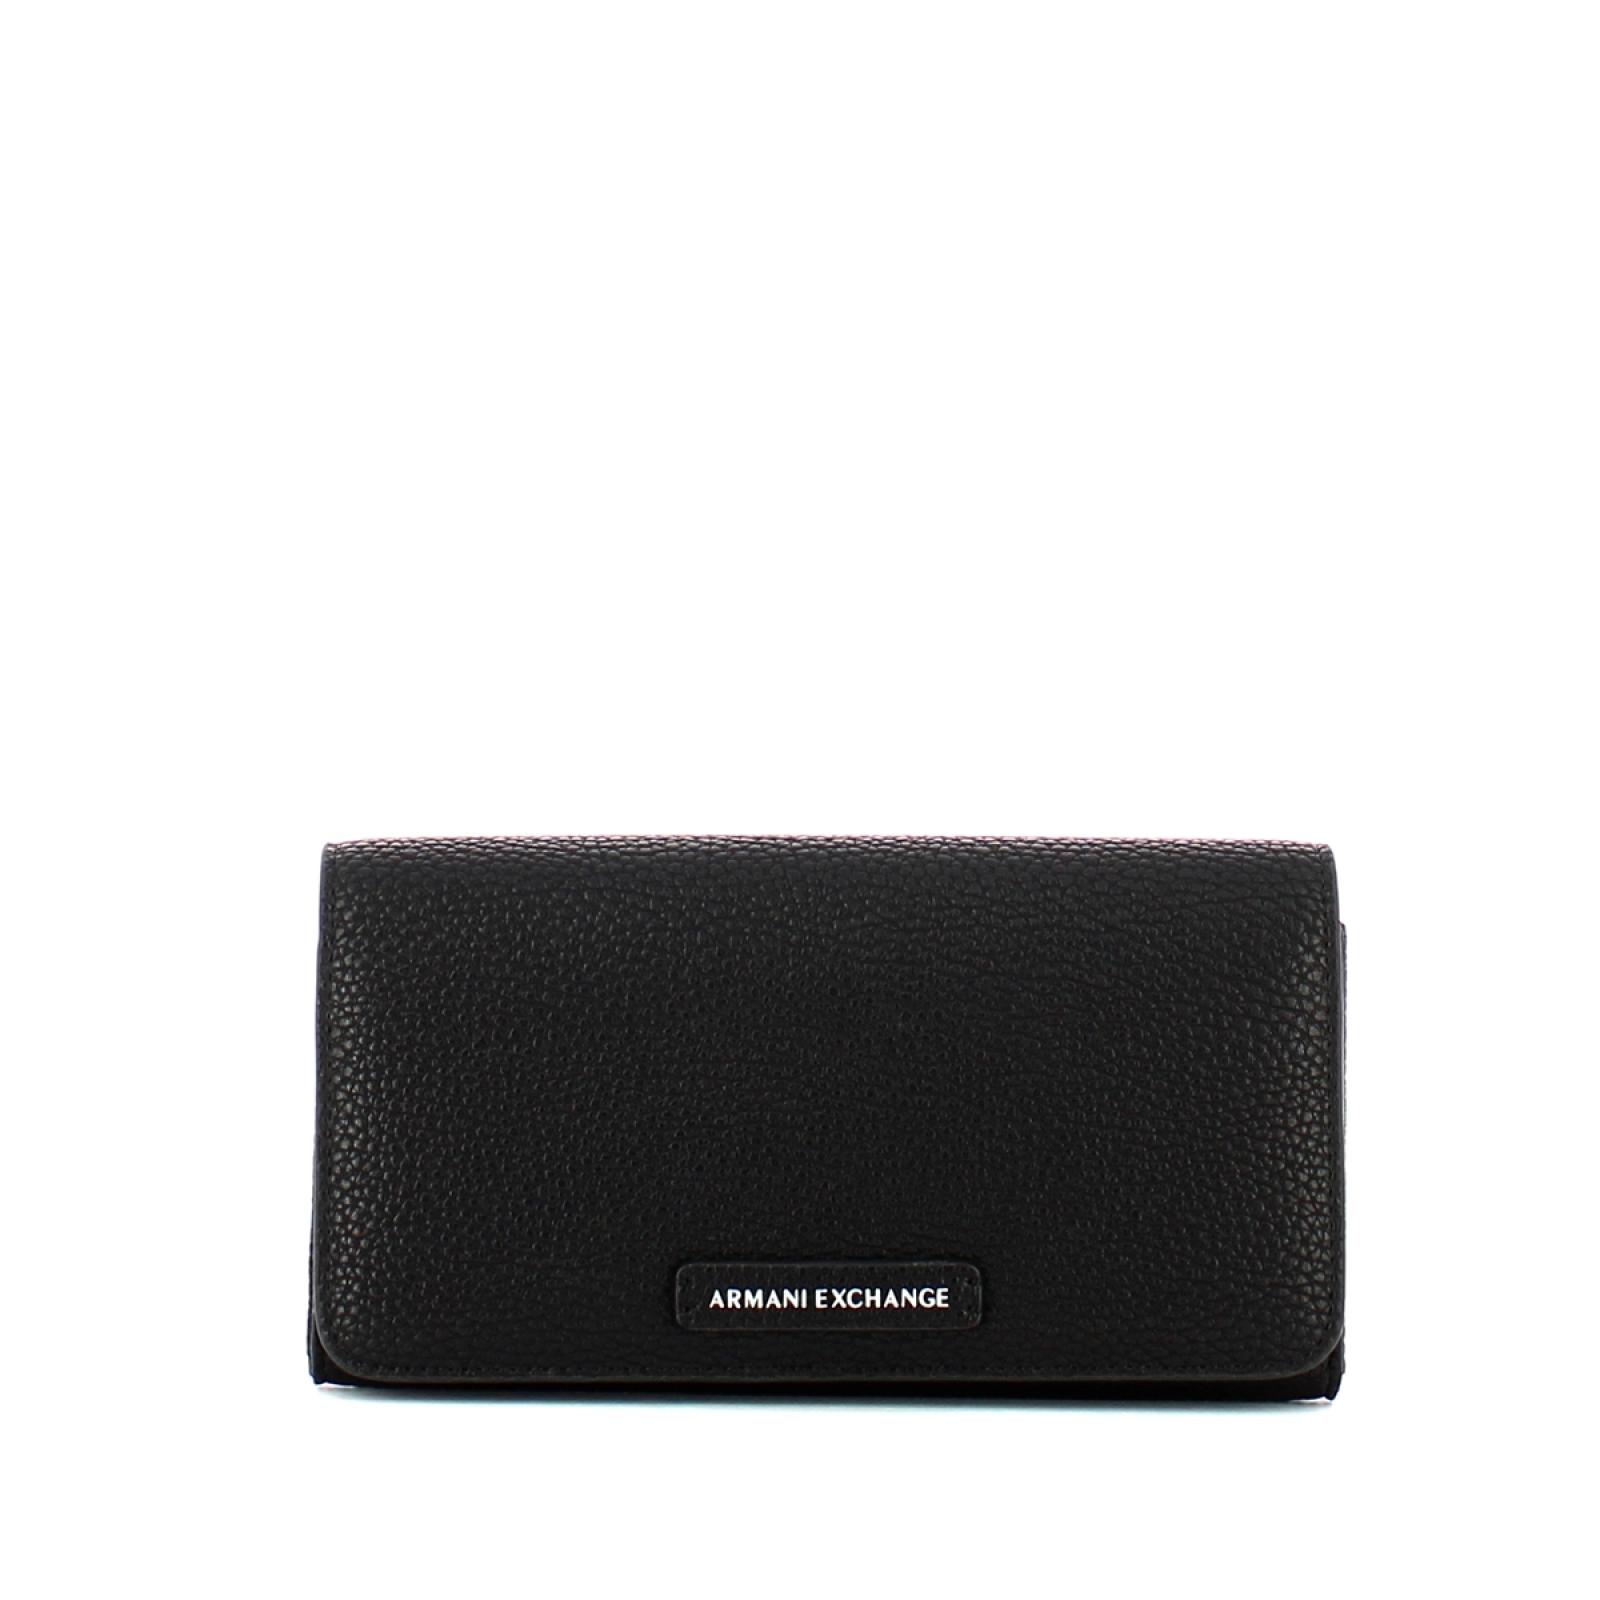 Woman wallet - 1